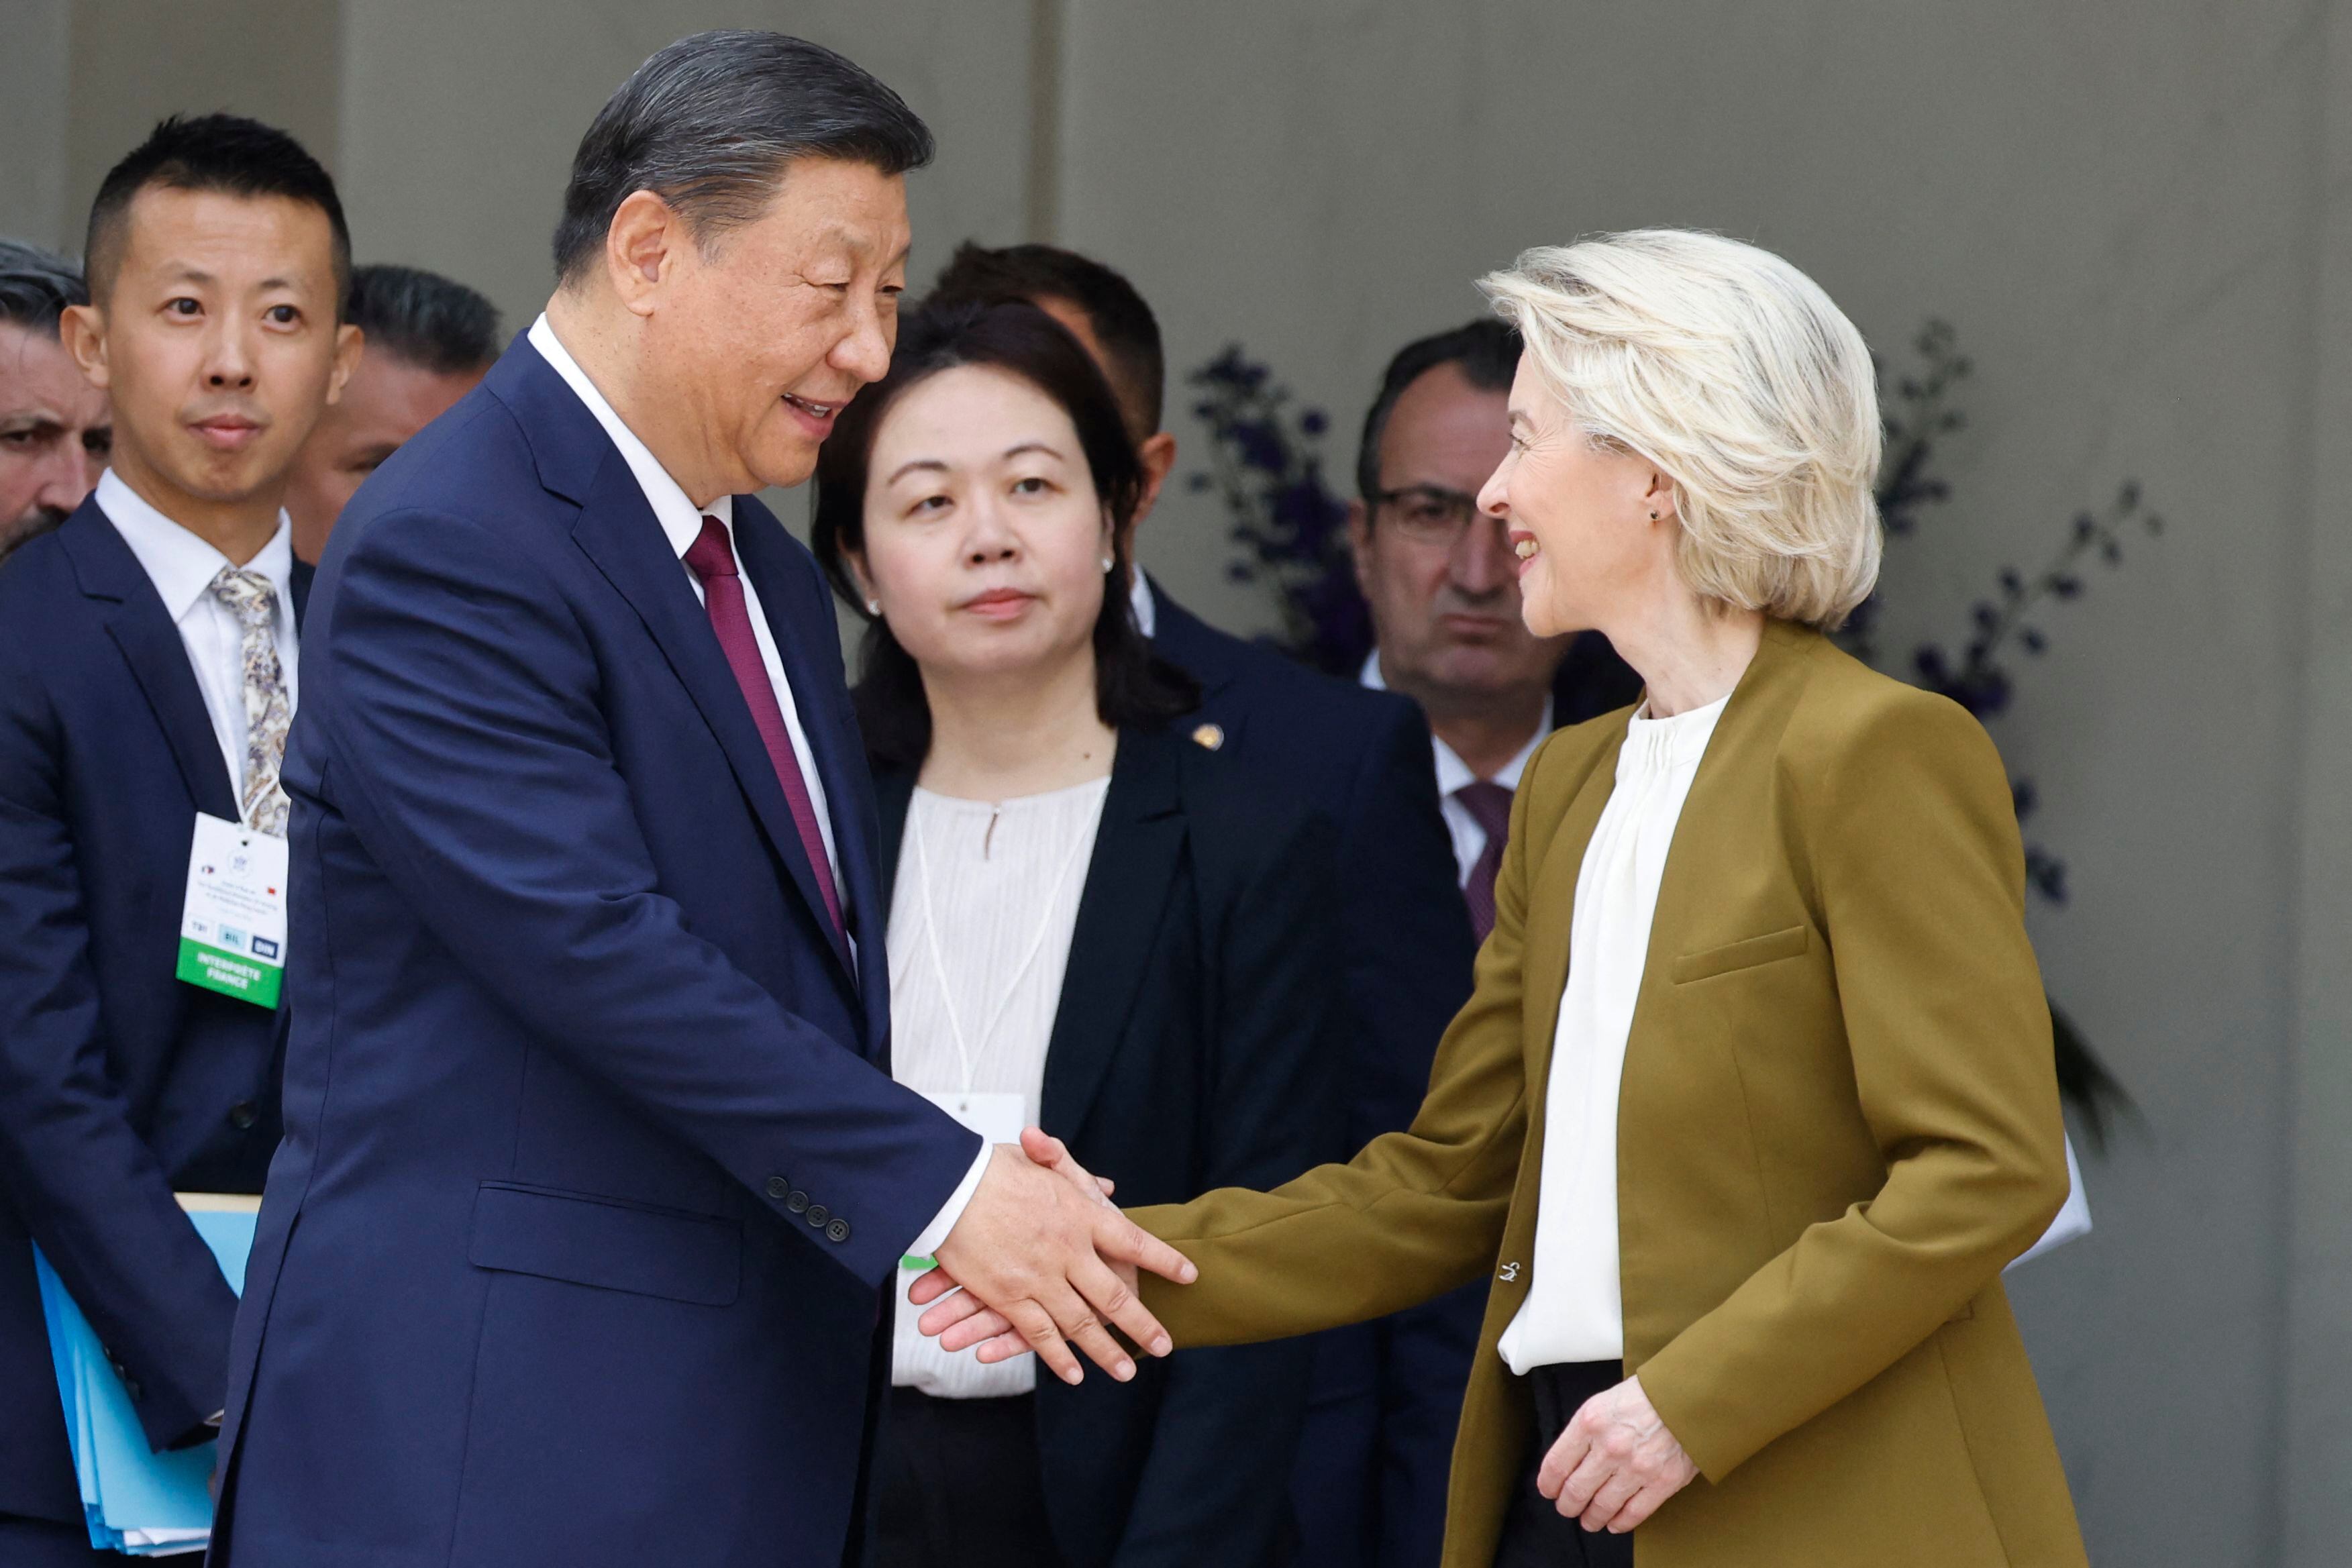 El presidente chino, Xi Jinping, saluda a la presidenta de la Comisión Europea, Ursula von der Leyen, después de celebrar una reunión trilateral, que incluyó al presidente francés, Emmanuel Macron, como parte de la visita de estado de Xi a Francia.